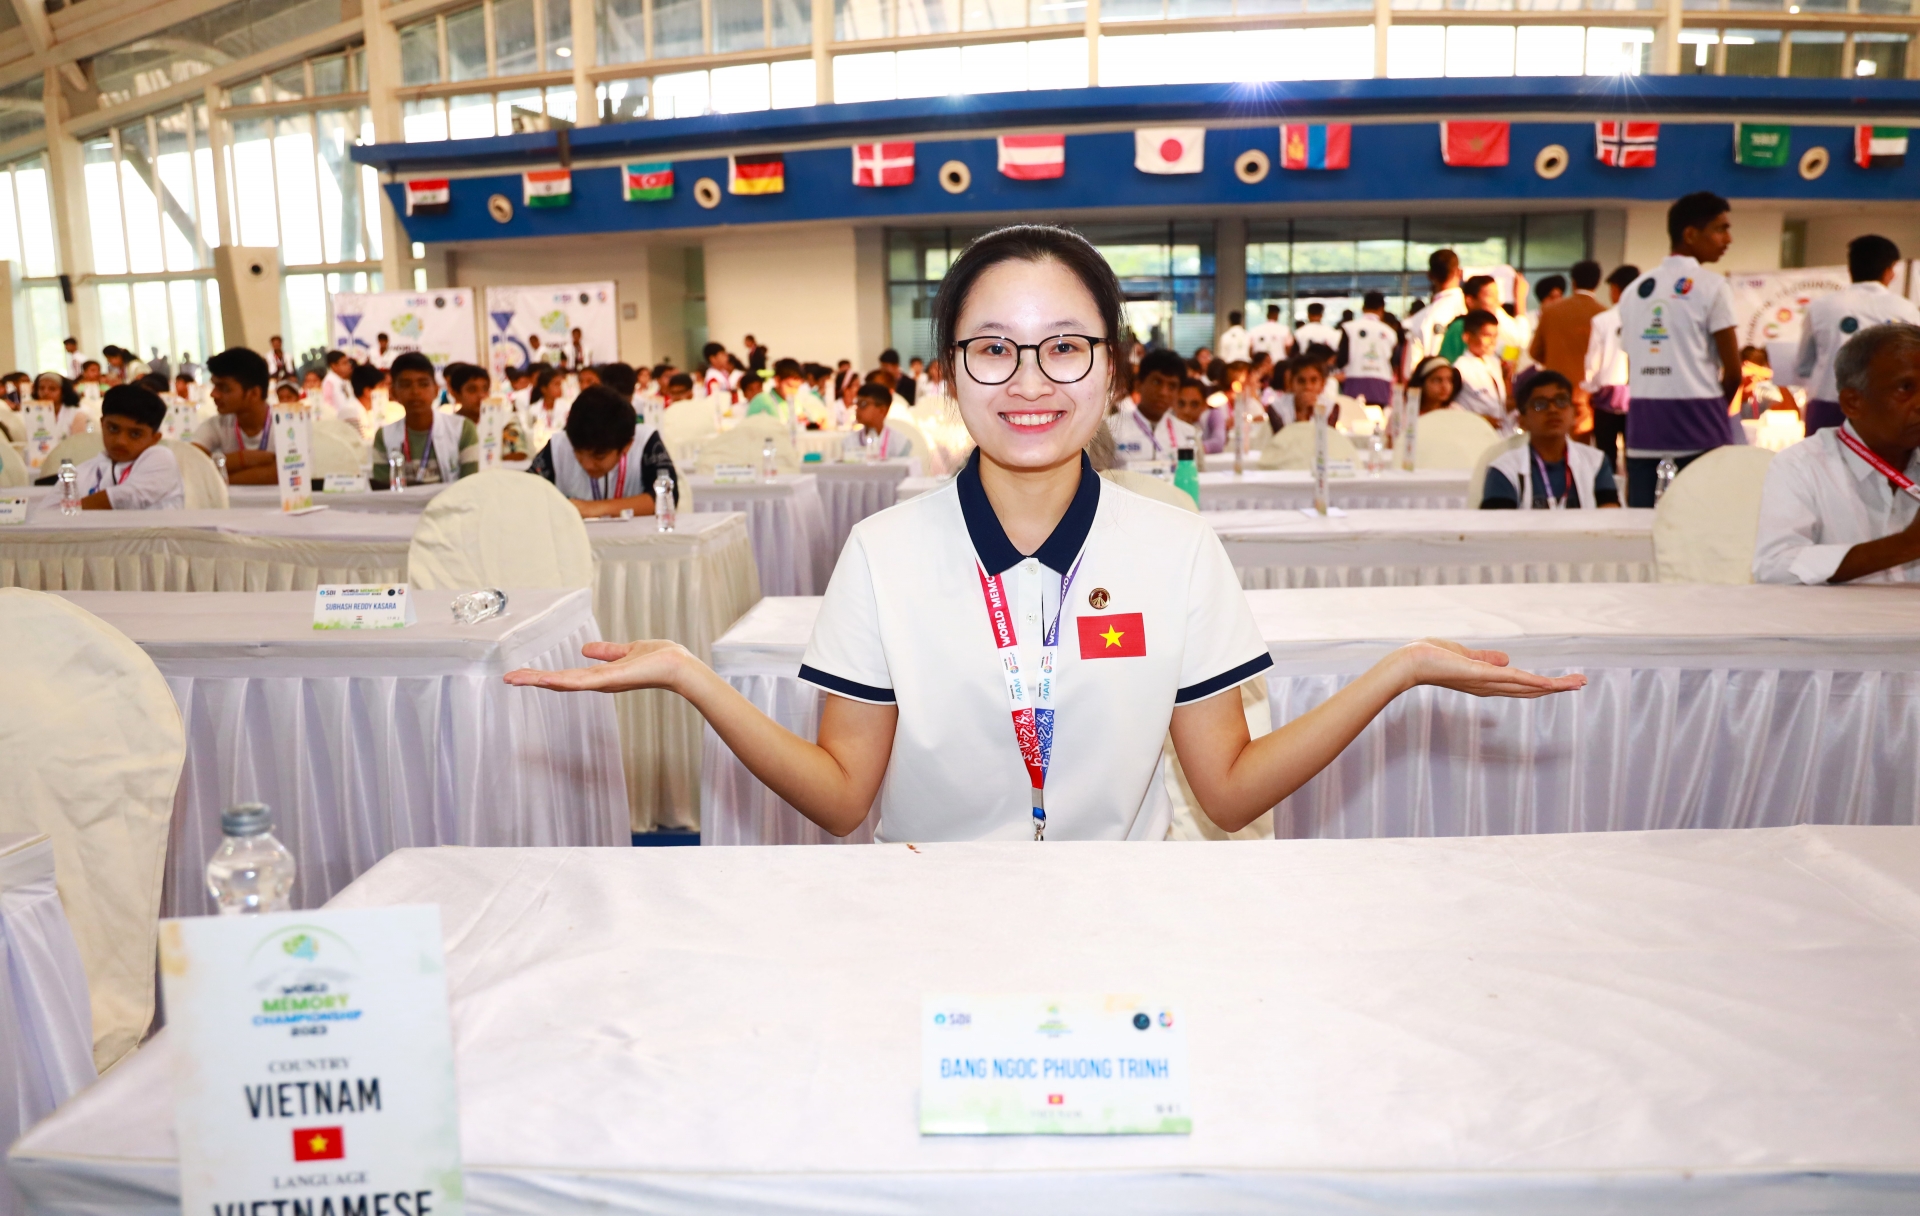 Đặng Ngọc Phương Trinh xuất sắc vượt qua 780 thí sinh đến từ nhiều quốc gia, vùng lãnh thổ để vô địch Cuộc thi Siêu trí nhớ thế giới năm 2023